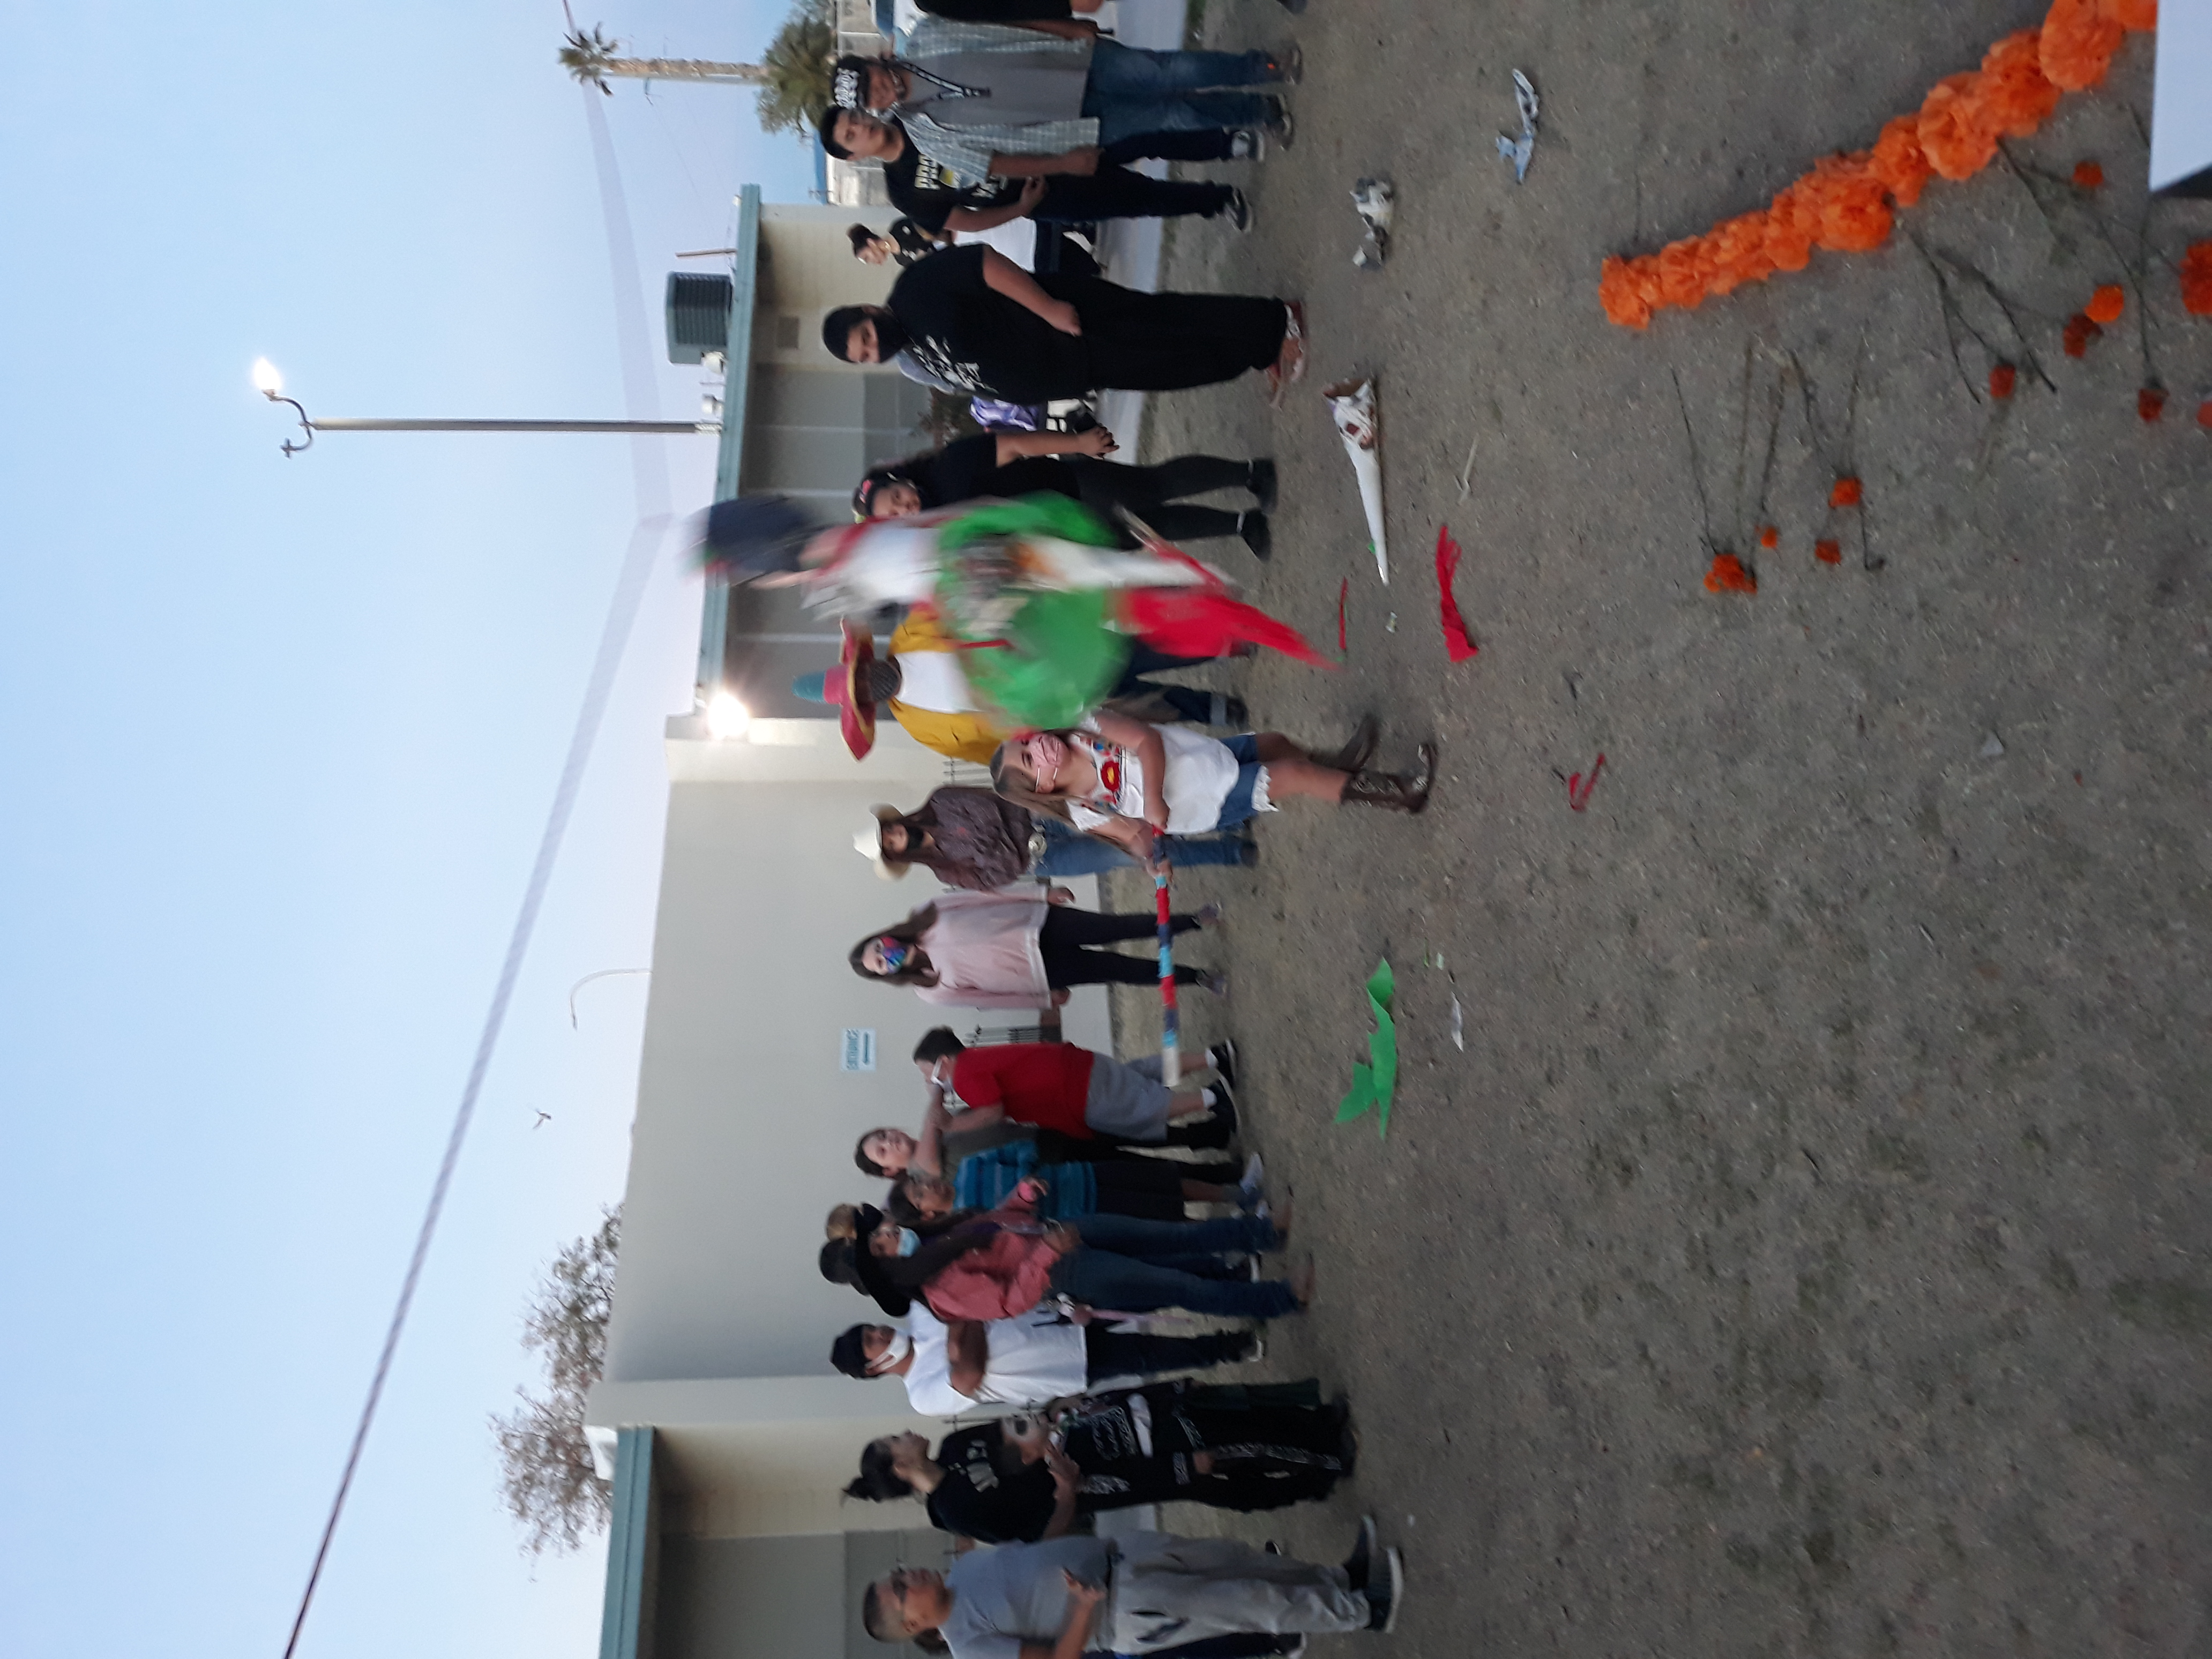 Piñata Fun at Pachanga en Celebración de Día de los Muertos